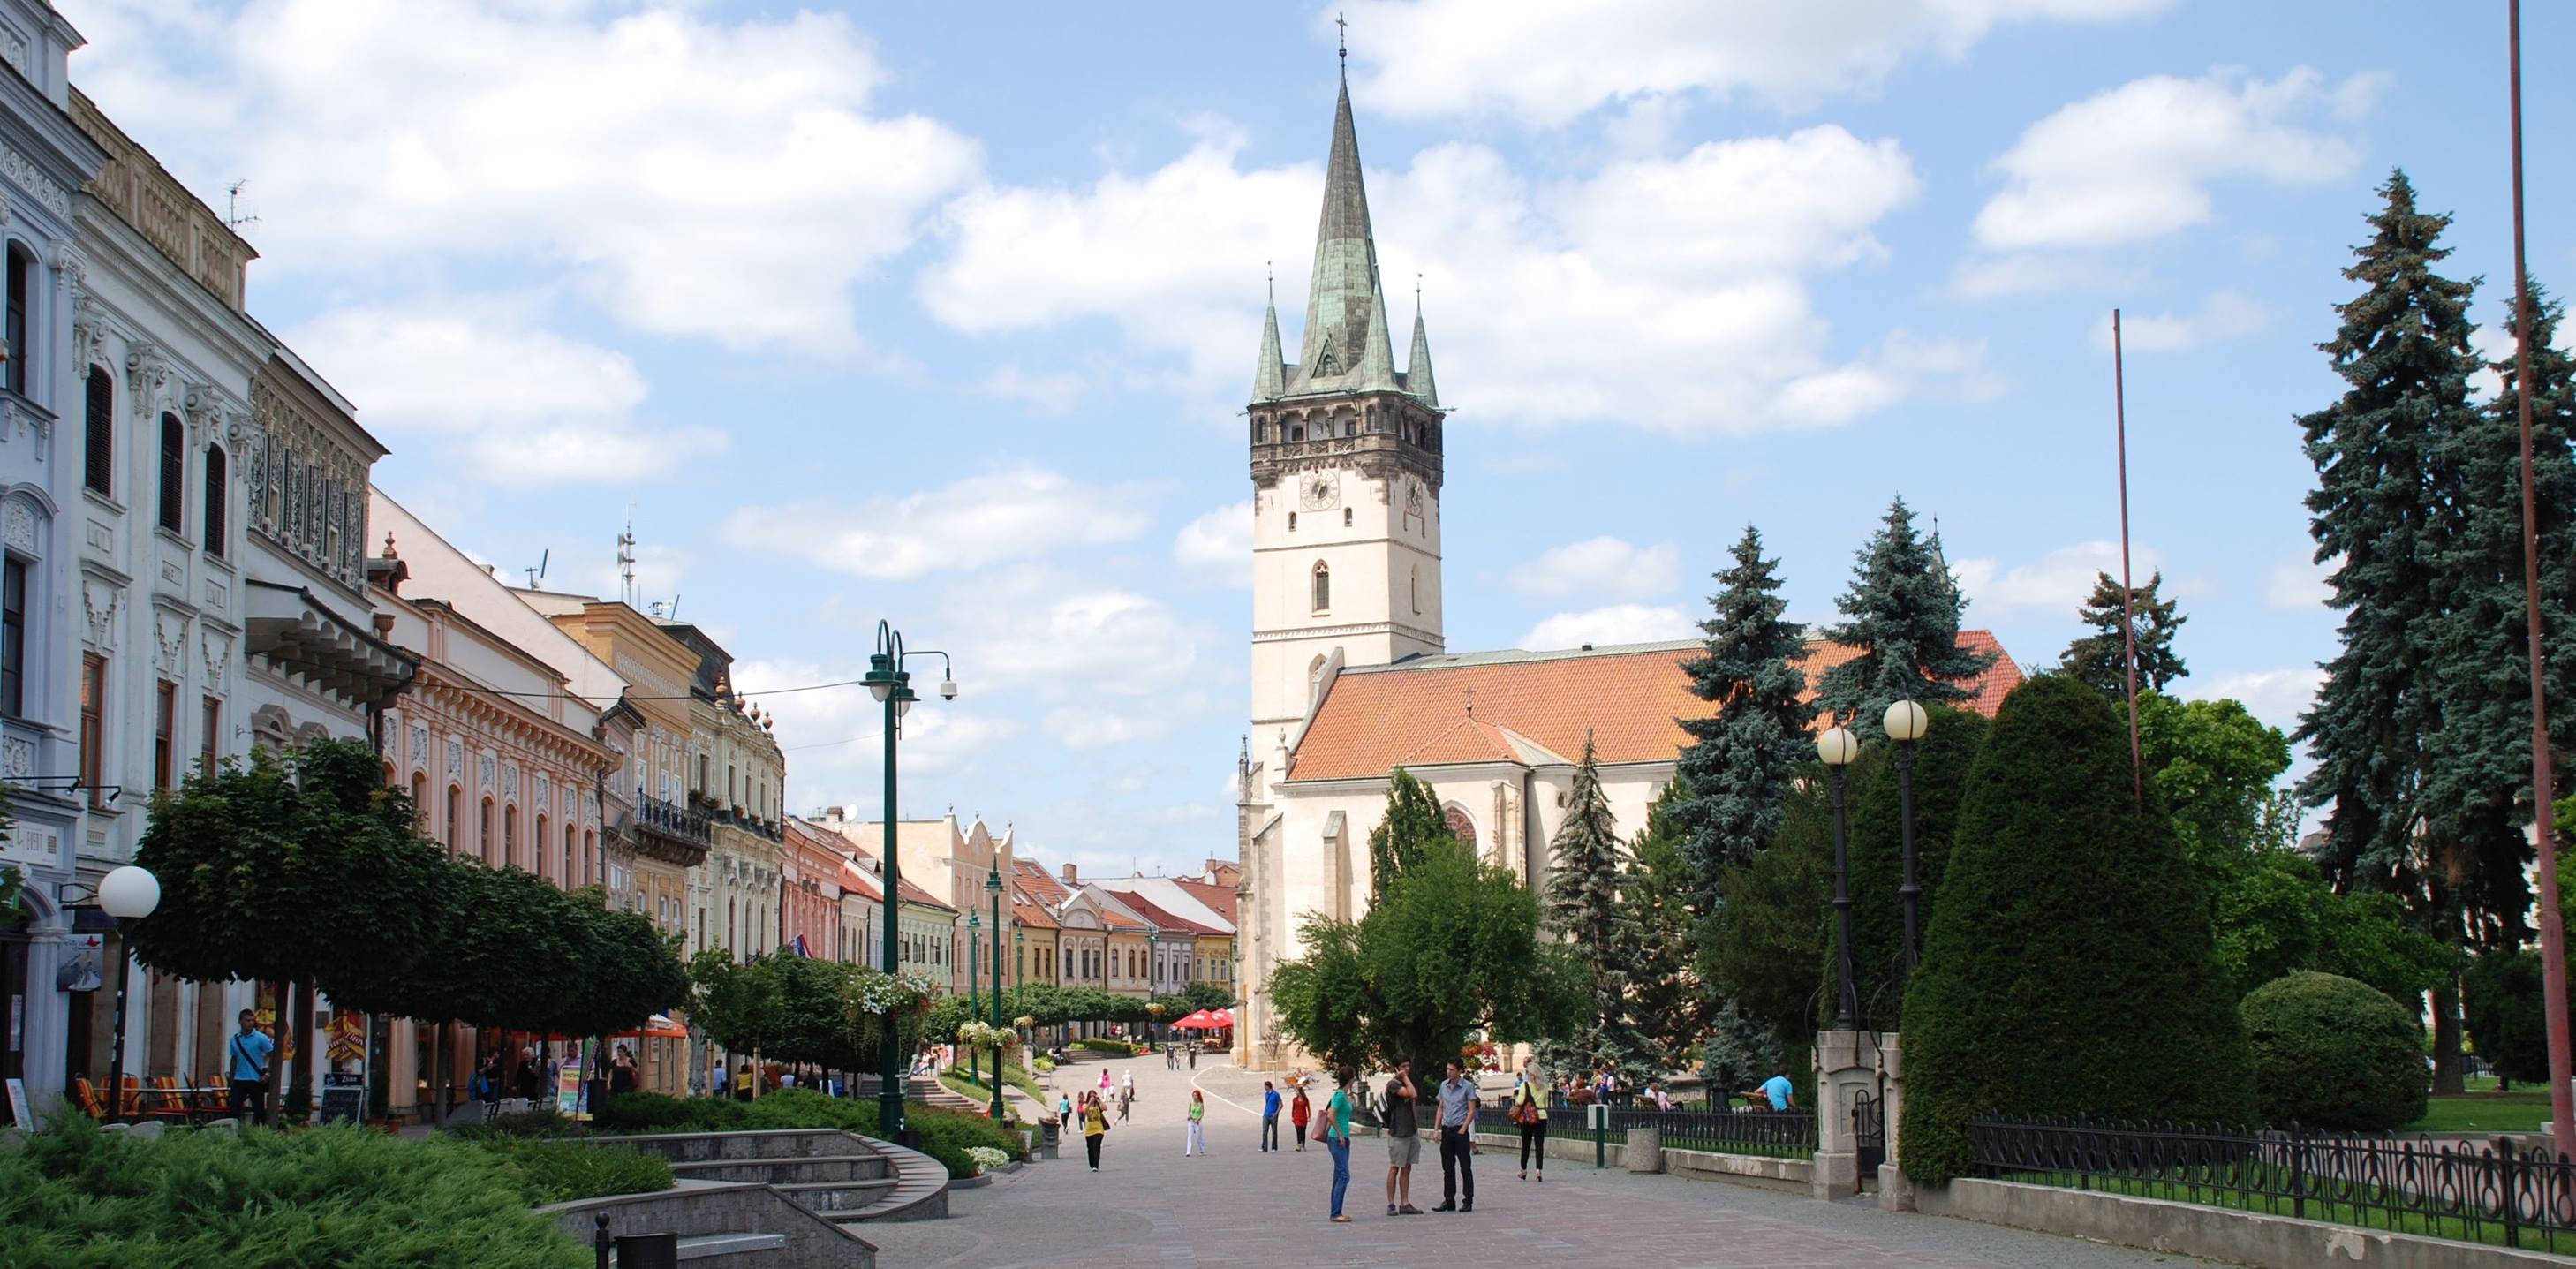 Ak by boli komunálne voľby dnes: Koho by ste volili za primátora mesta Prešov? Hlasujte v tomto prieskume!